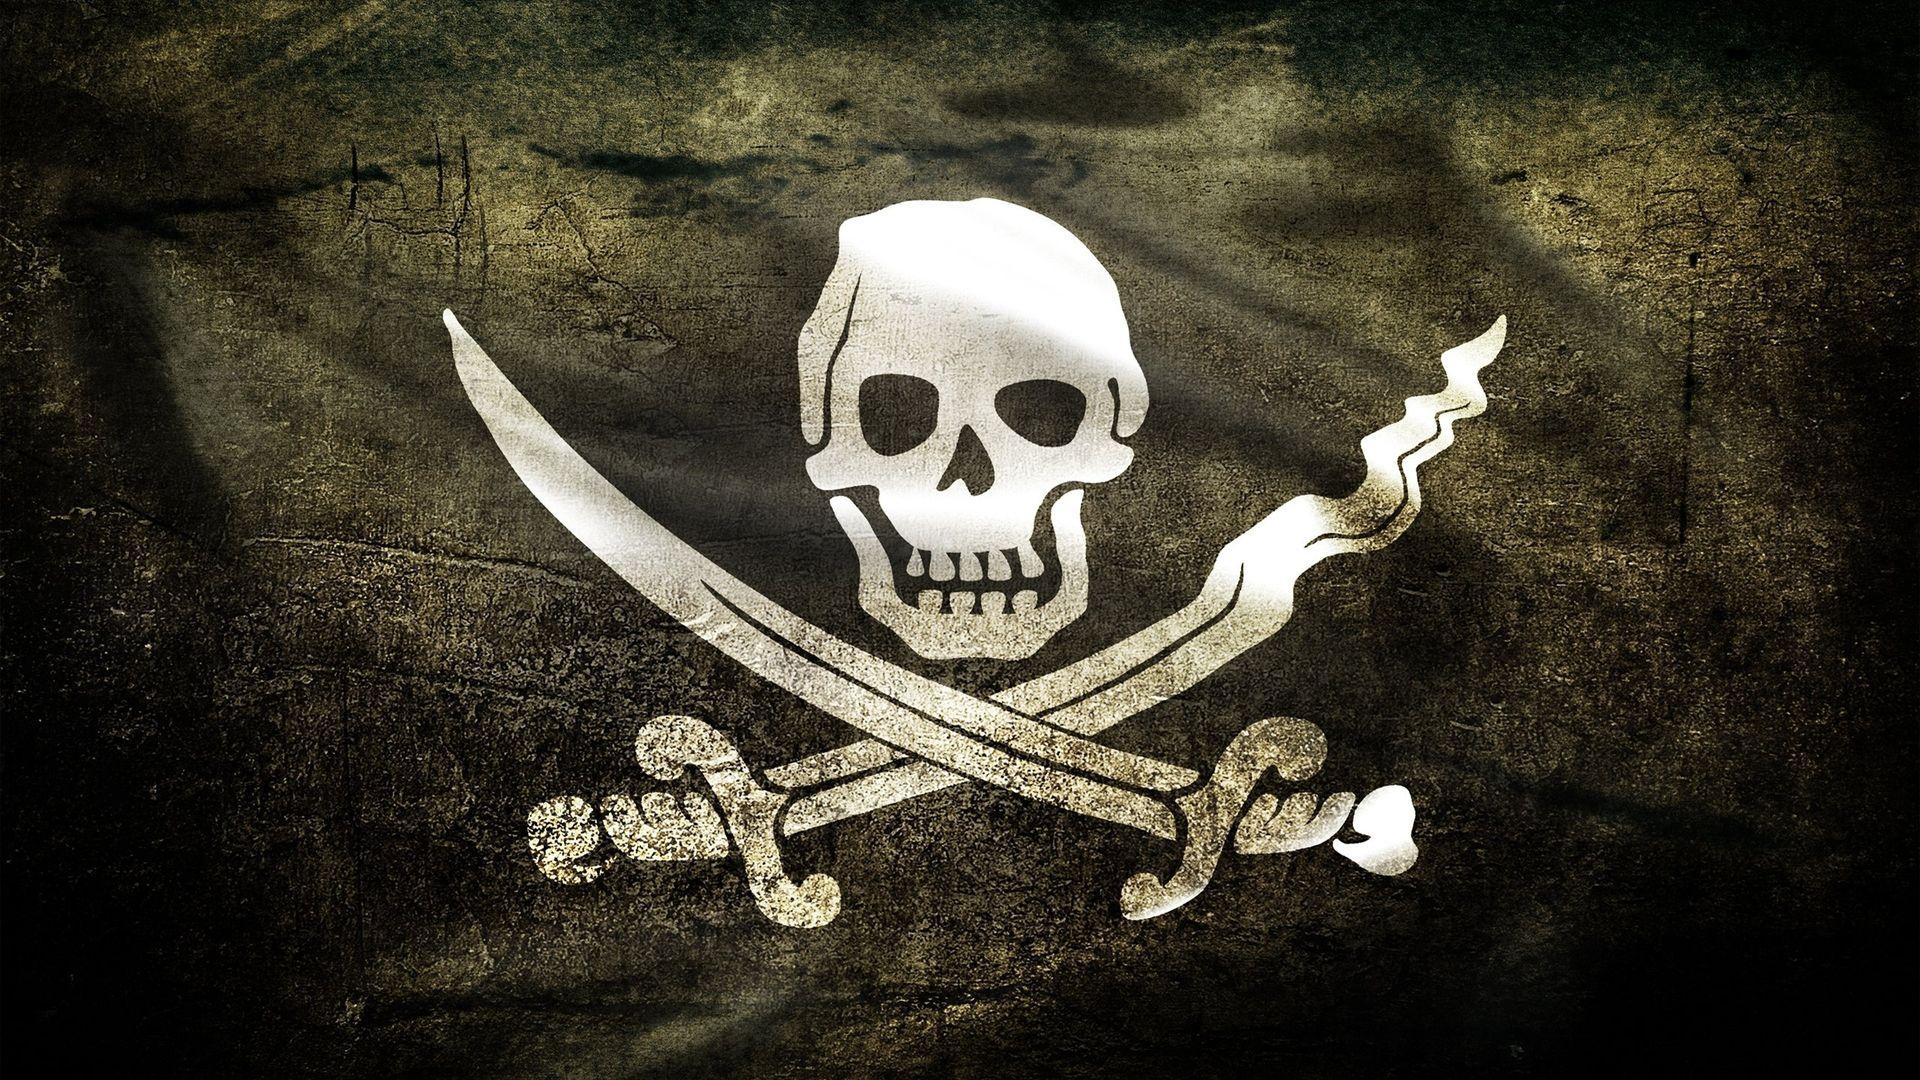 Pirate Skull Cross Bones Wallpaper. Pirates, Pirate songs, Calico